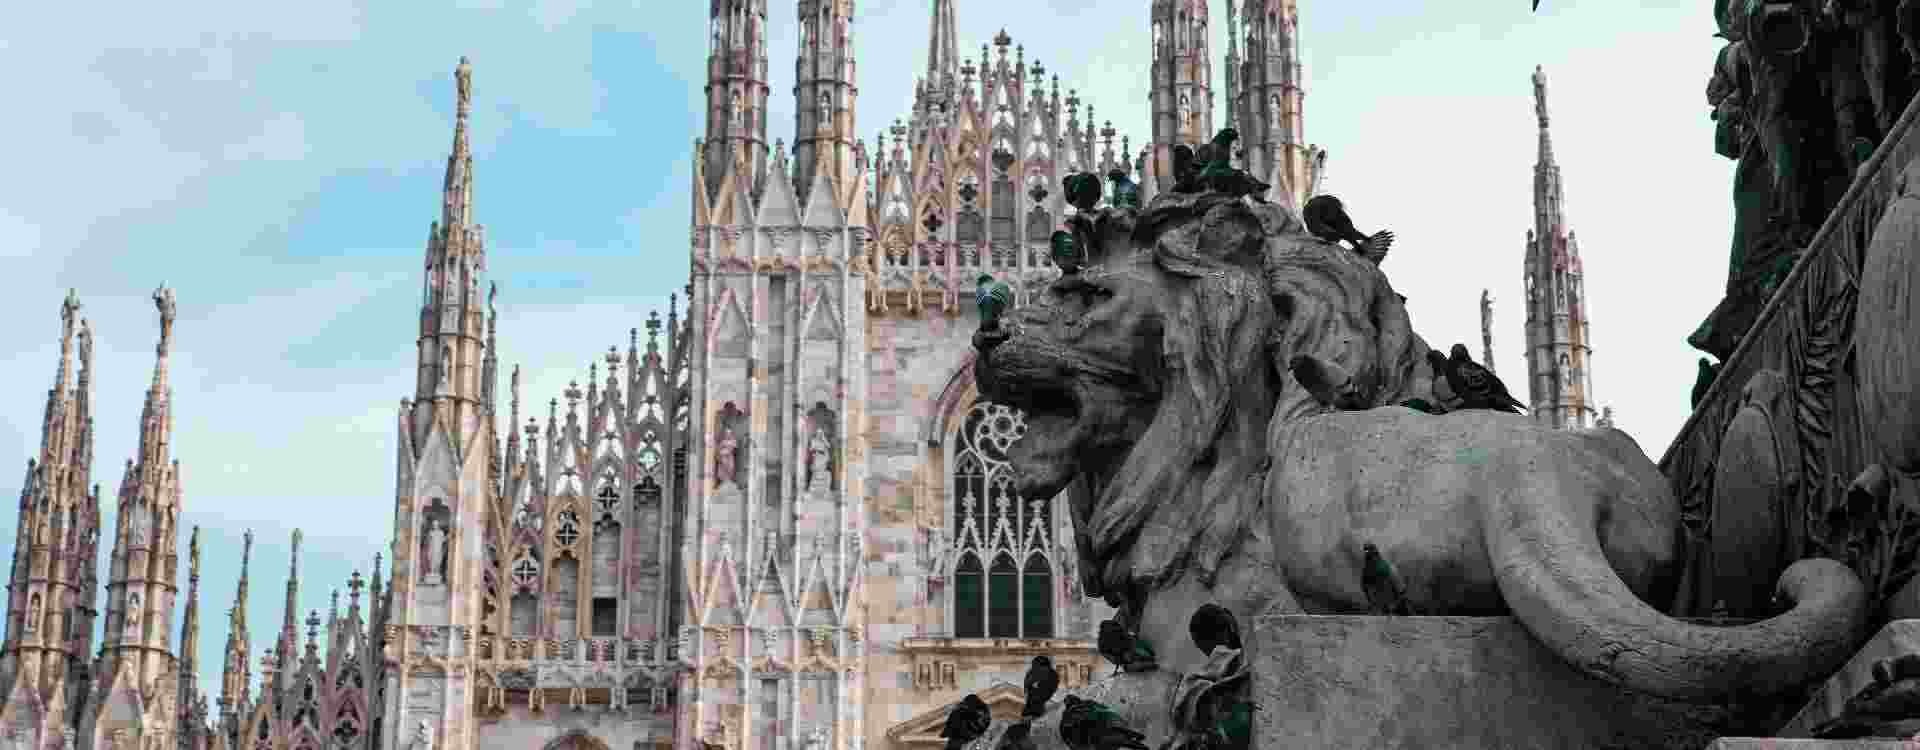 Regali per milanesi: come stupire chi ama Milano